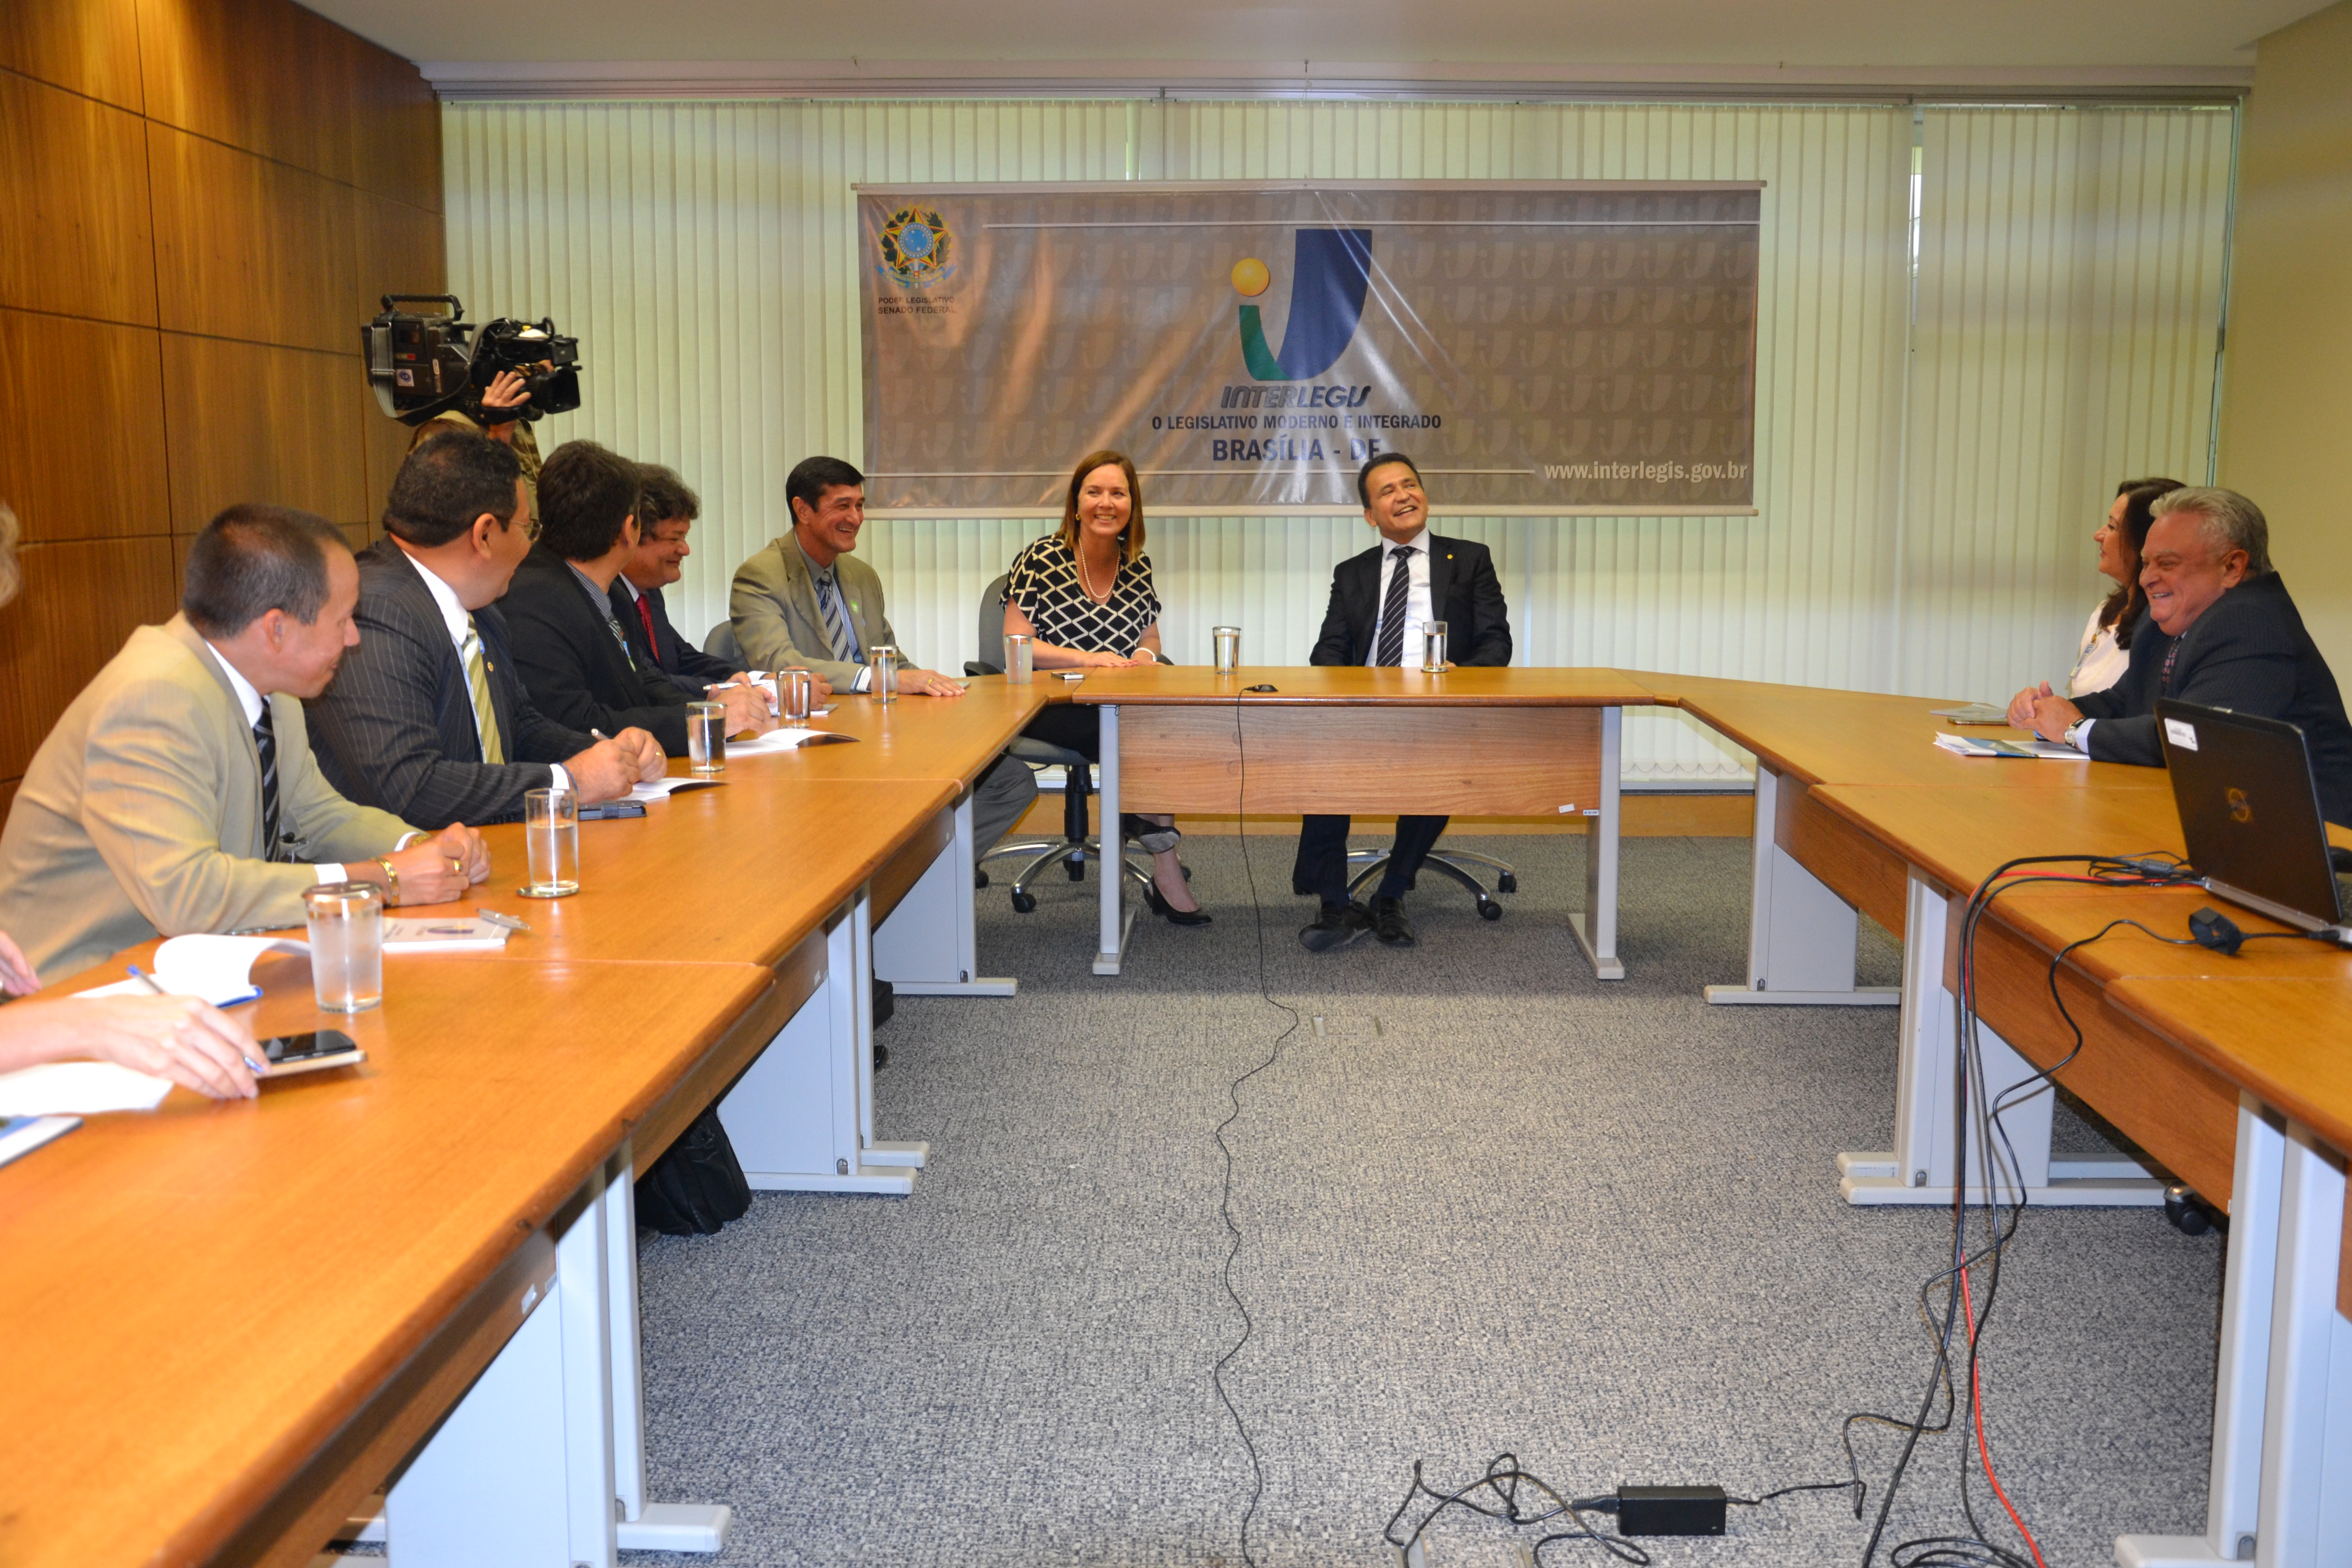 Deputado federal Marcos Reategui vem ao Interlegis para tratar de oficina tecnológica no Amapá